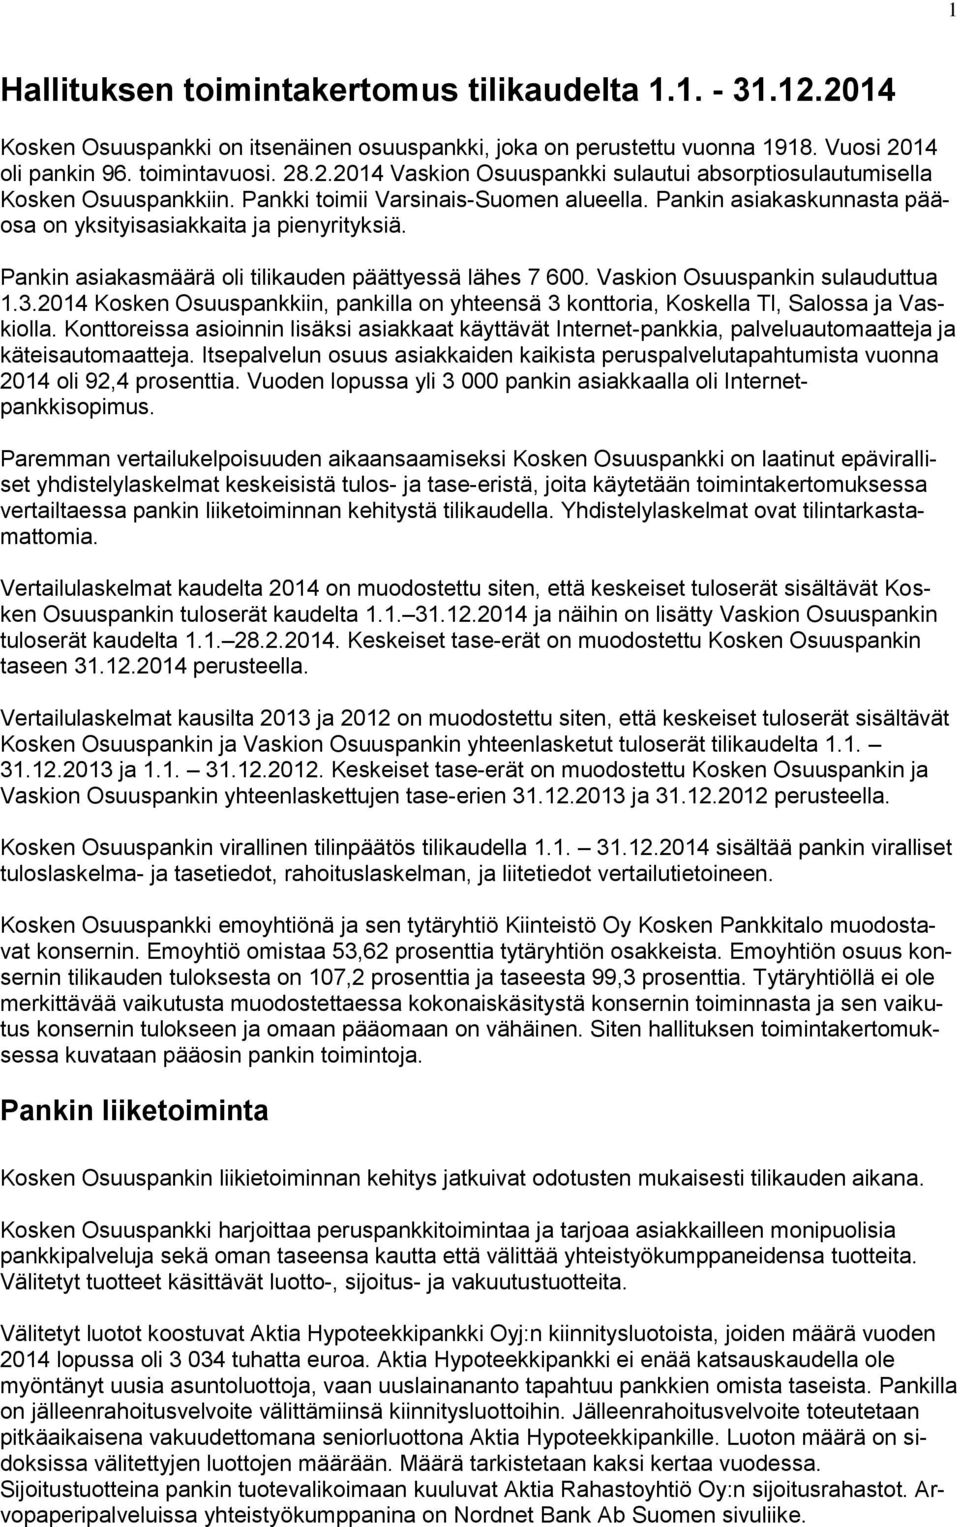 Vaskion Osuuspankin sulauduttua 1.3.2014 Kosken Osuuspankkiin, pankilla on yhteensä 3 konttoria, Koskella Tl, Salossa ja Vaskiolla.